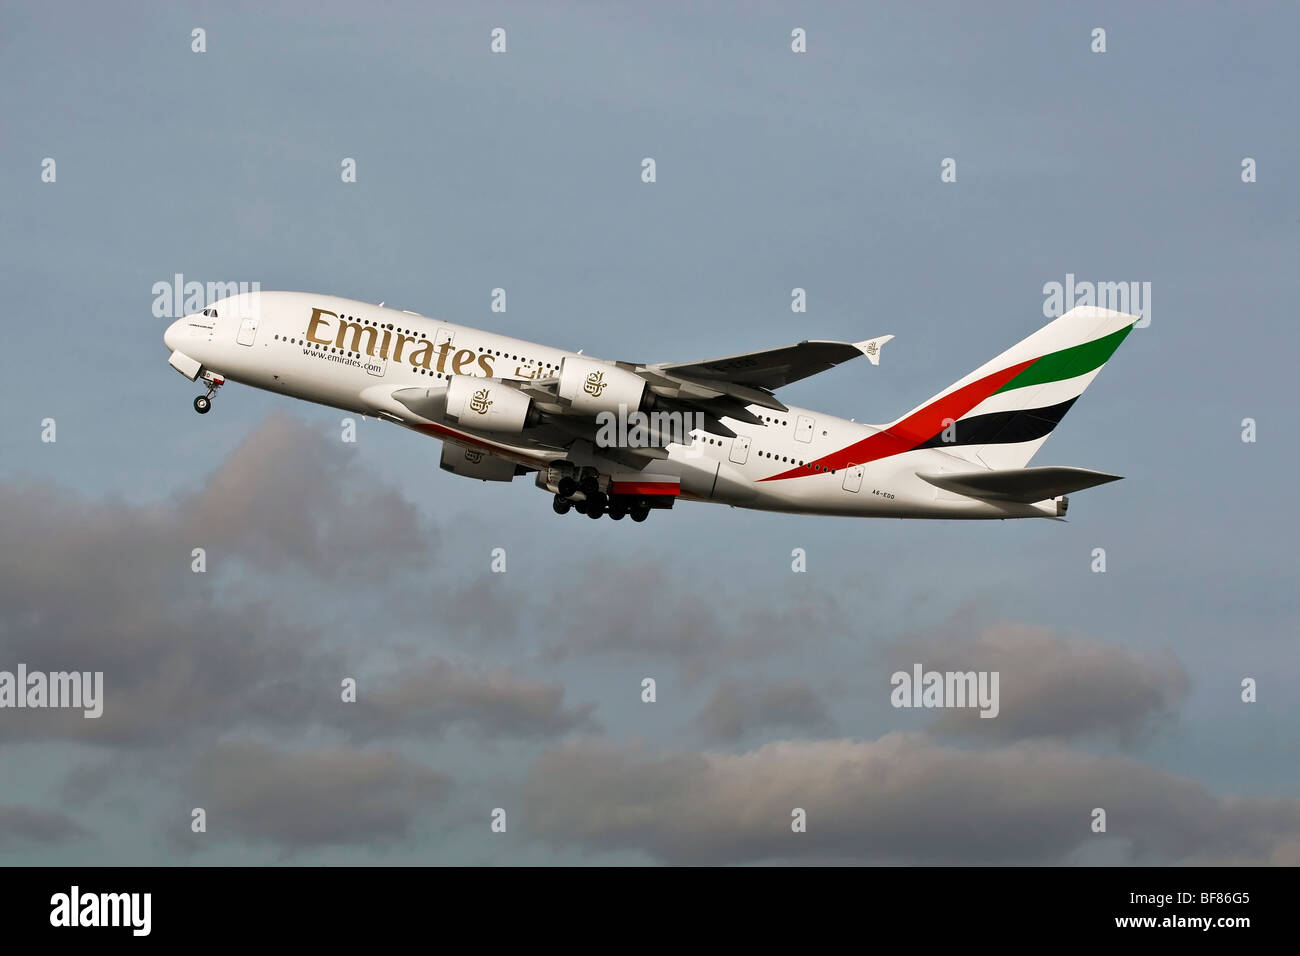 Un Airbus A380 d'Emirates super jumbo la compagnie aérienne nationale de Dubaï au décollage Banque D'Images